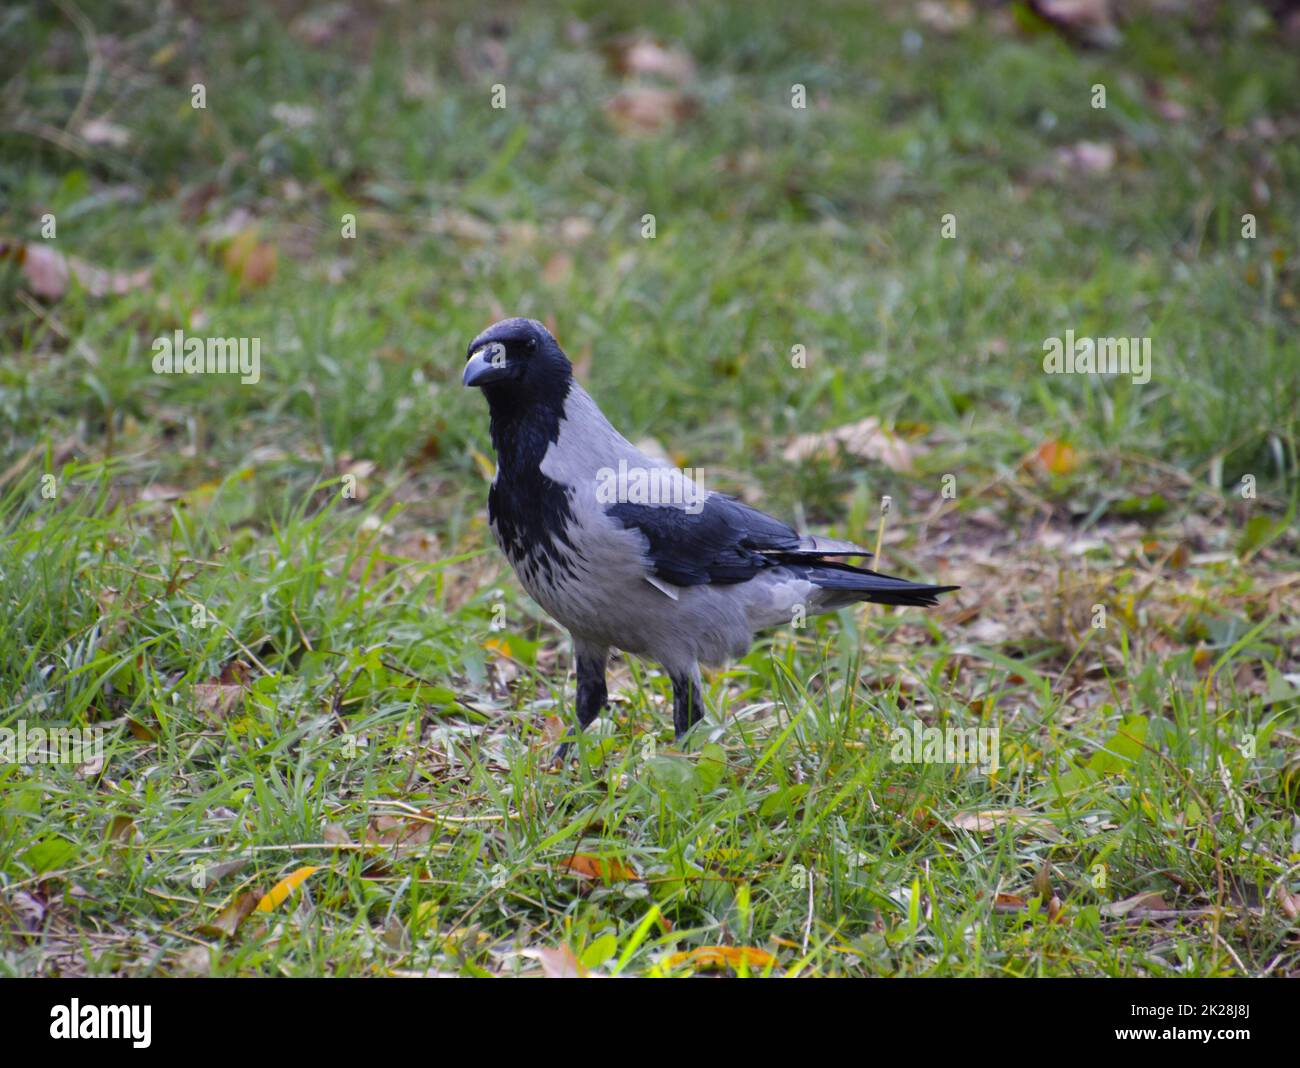 Corvo con cappuccio sull'erba. Un uccello della famiglia Corvidae Foto Stock